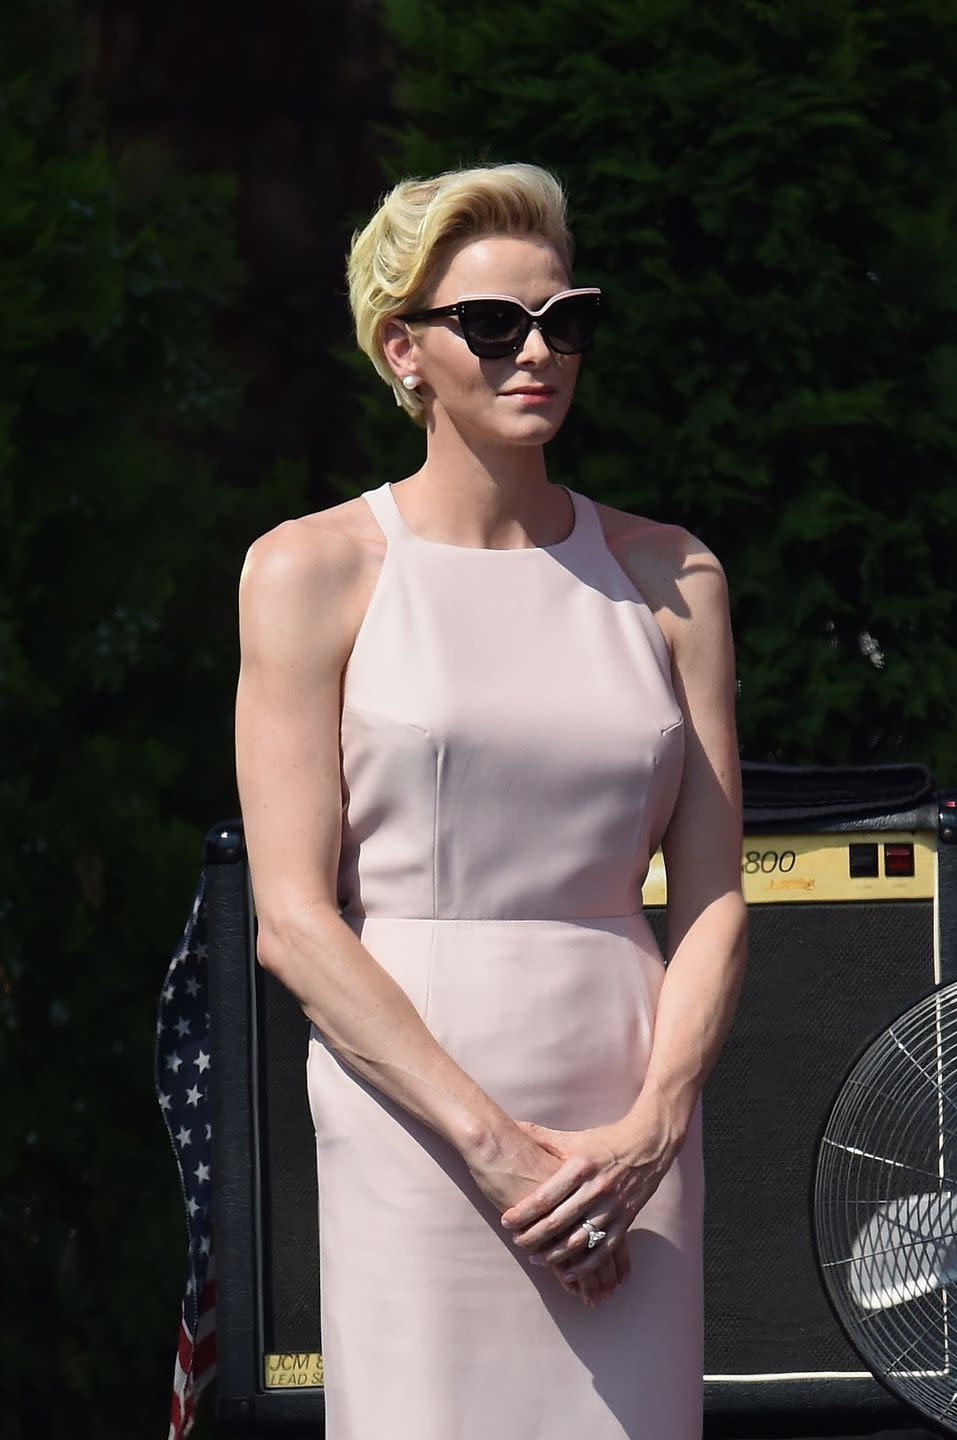 Her Serene Highness, Princess Charlene of Monaco